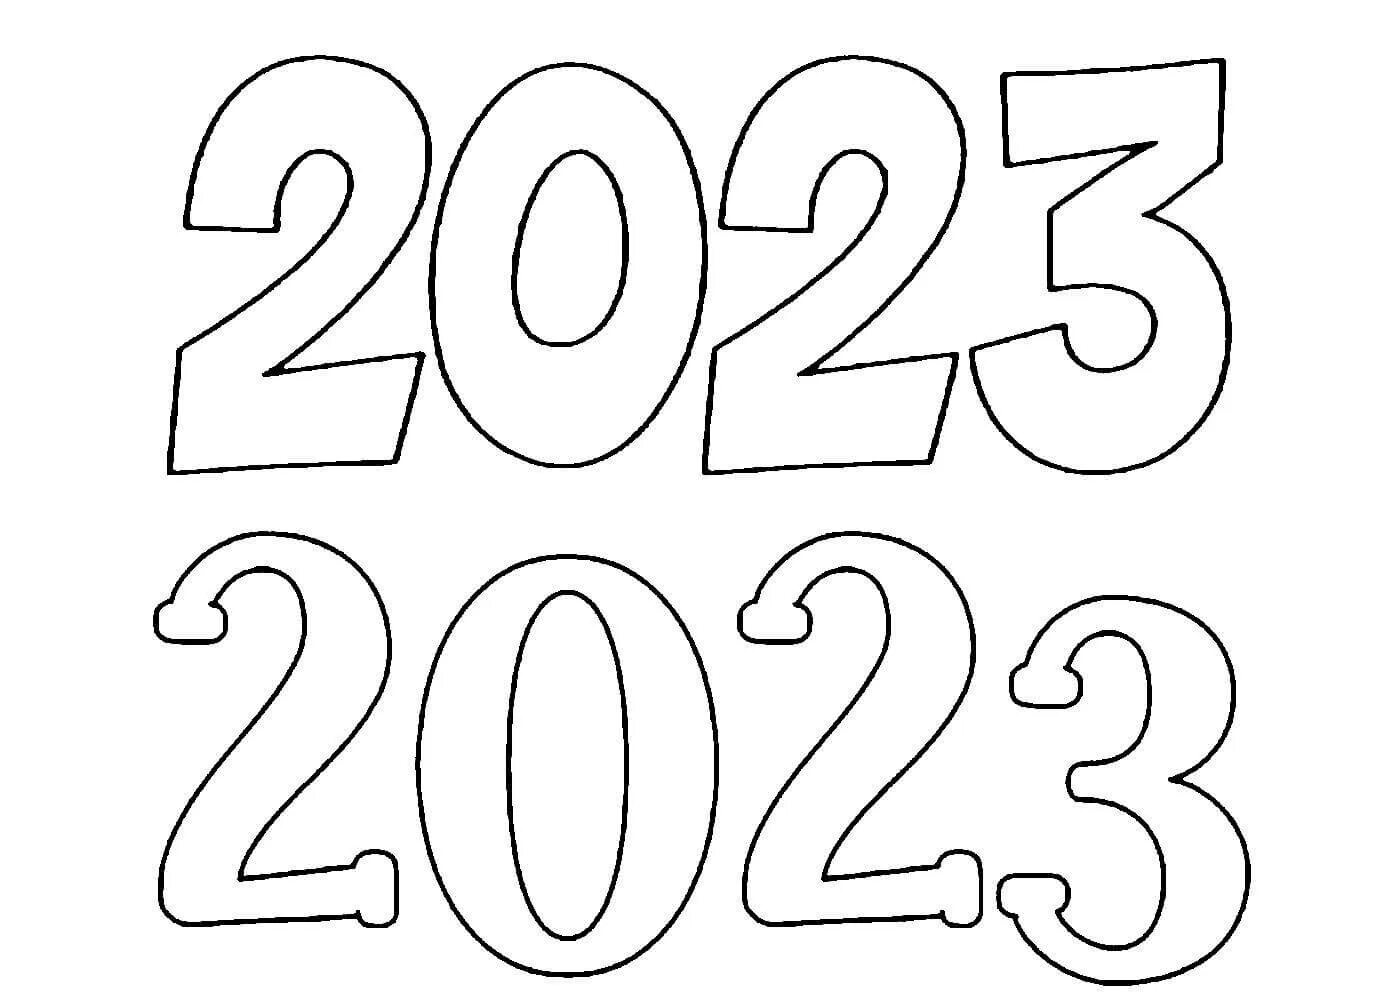 Раскраски 2023 распечатать. Рисунок на новый год 2023 надпись. Цифры 2023 на окна к новому году. Раскраска. Цифры трафарет для вырезания новогодние.